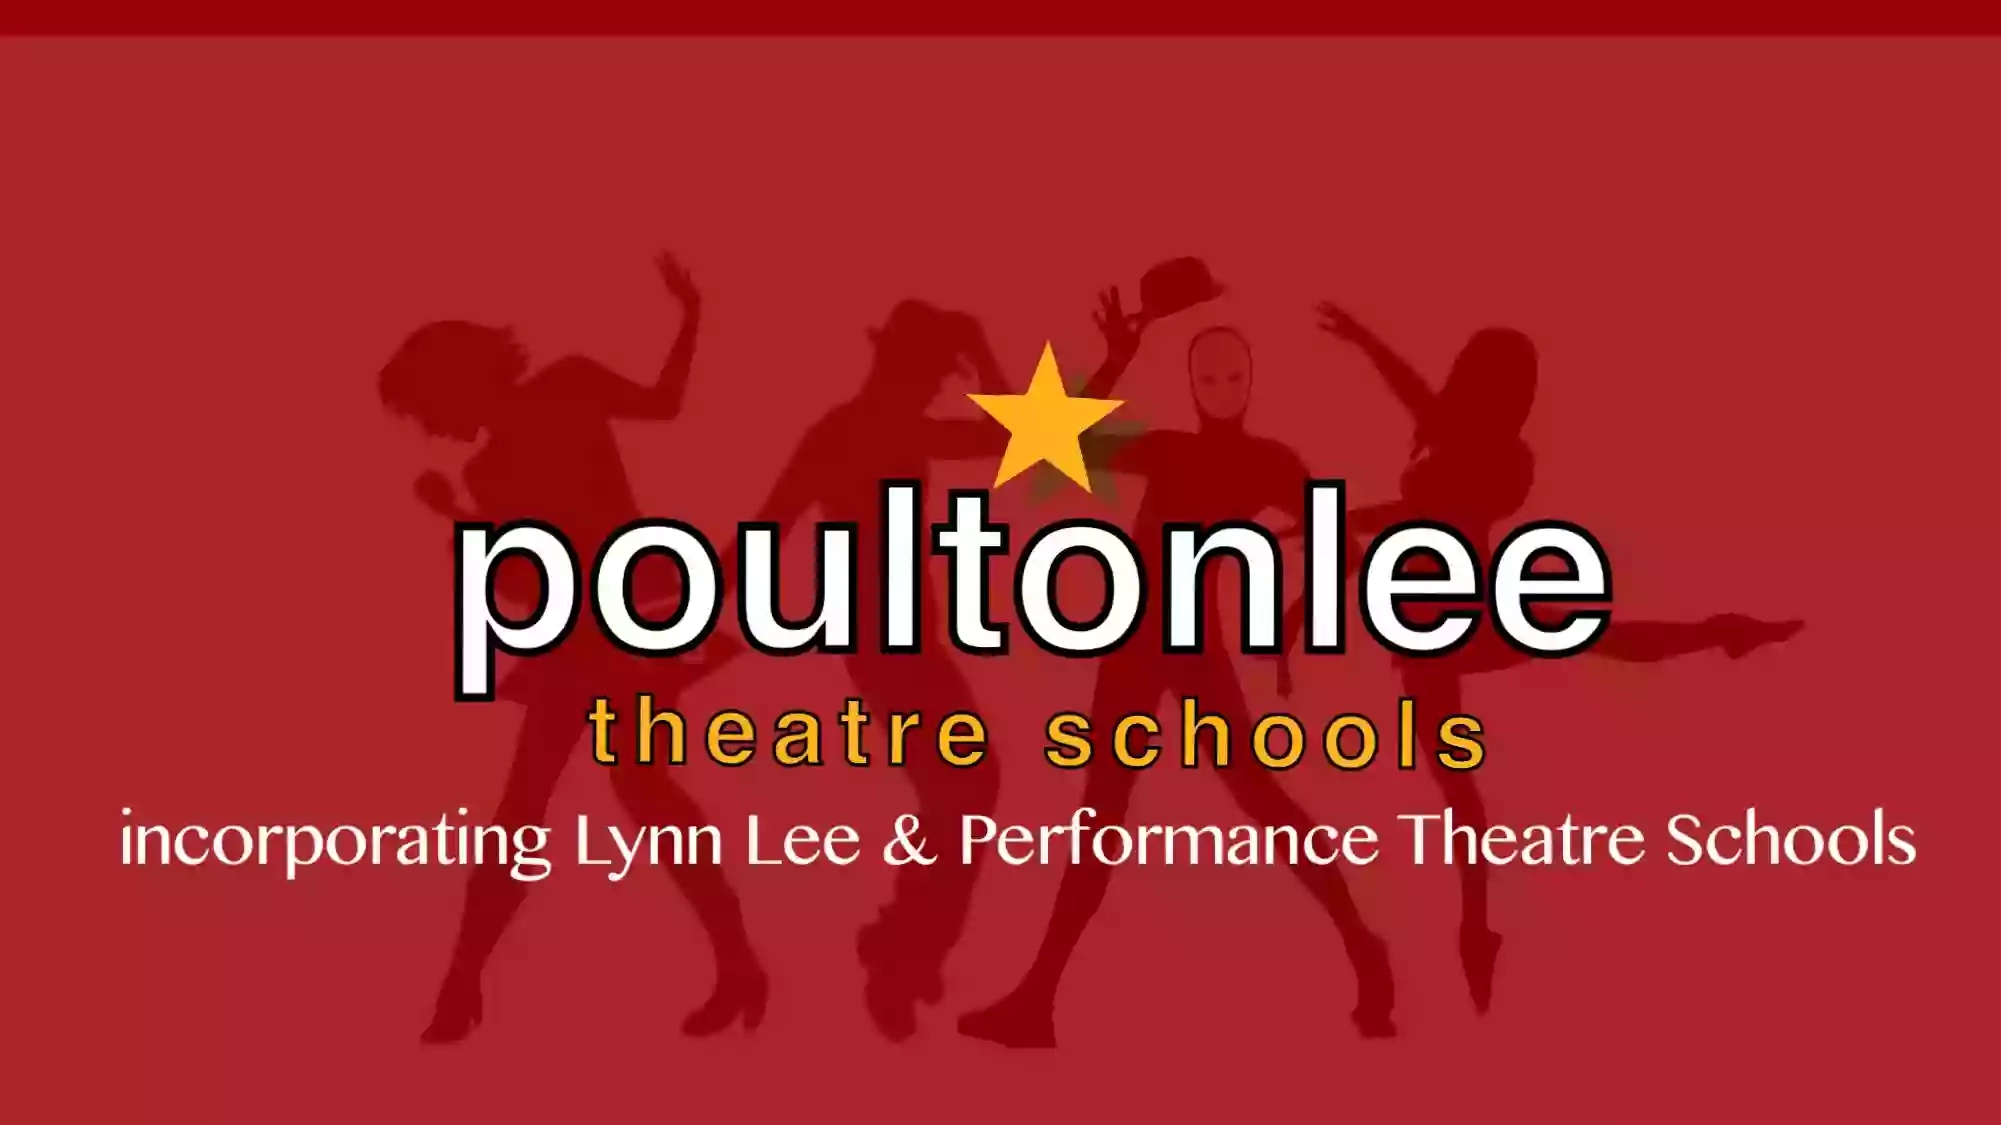 Lynn Lee Theatre School | Aveley| poultonlee theatre